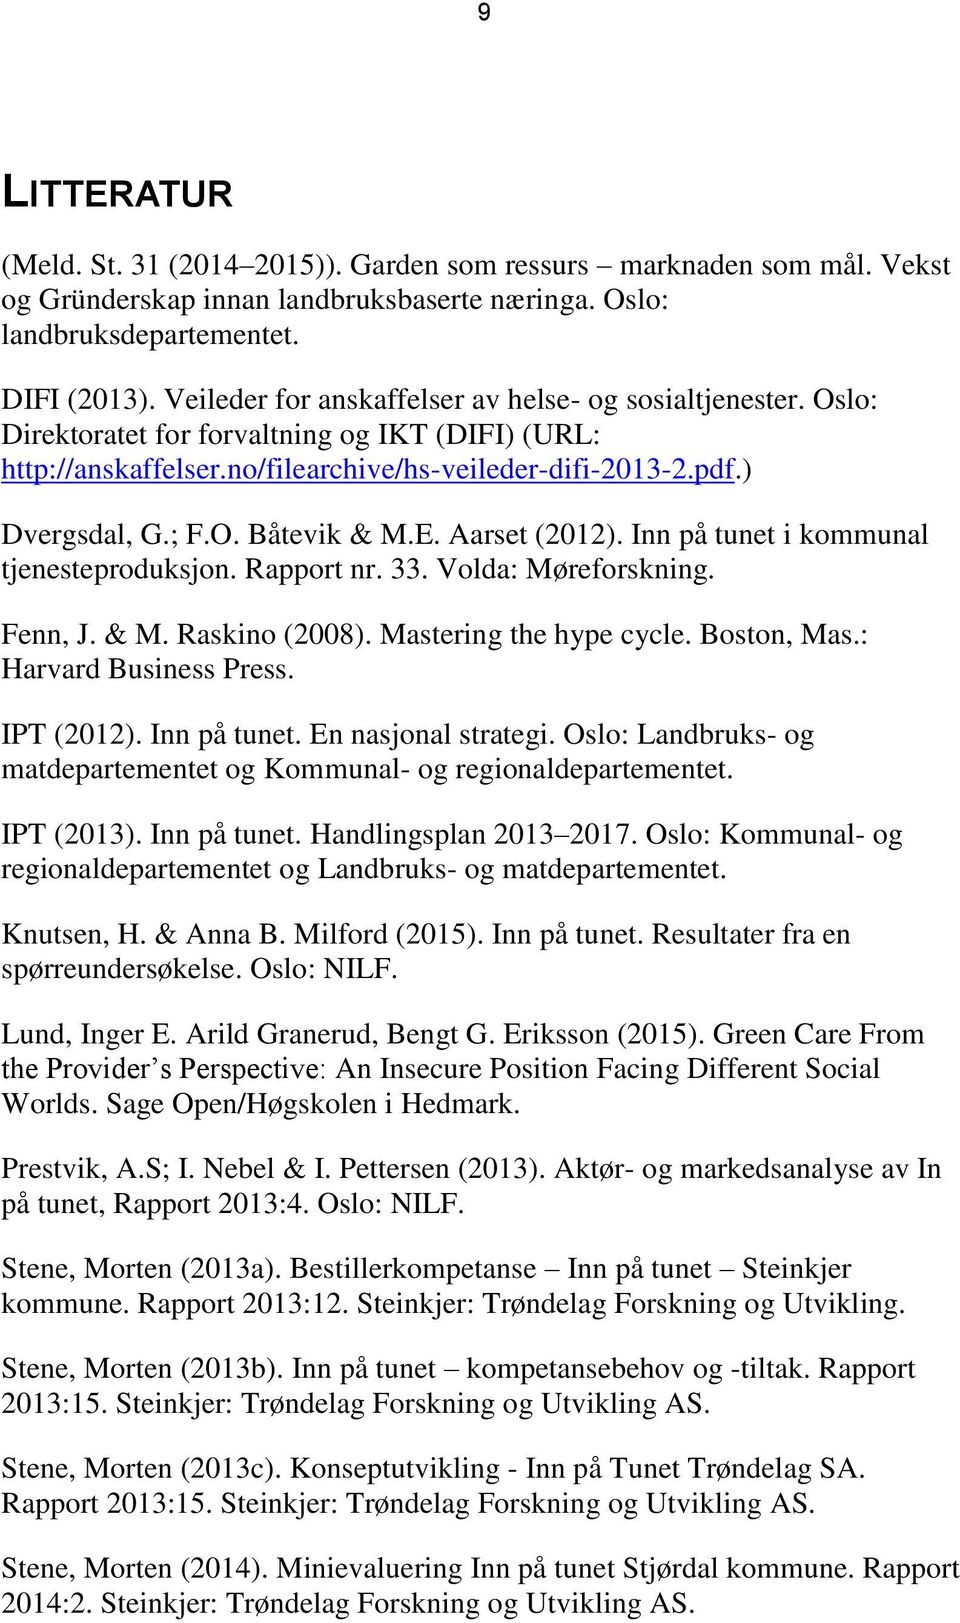 E. Aarset (2012). Inn på tunet i kommunal tjenesteproduksjon. Rapport nr. 33. Volda: Møreforskning. Fenn, J. & M. Raskino (2008). Mastering the hype cycle. Boston, Mas.: Harvard Business Press.